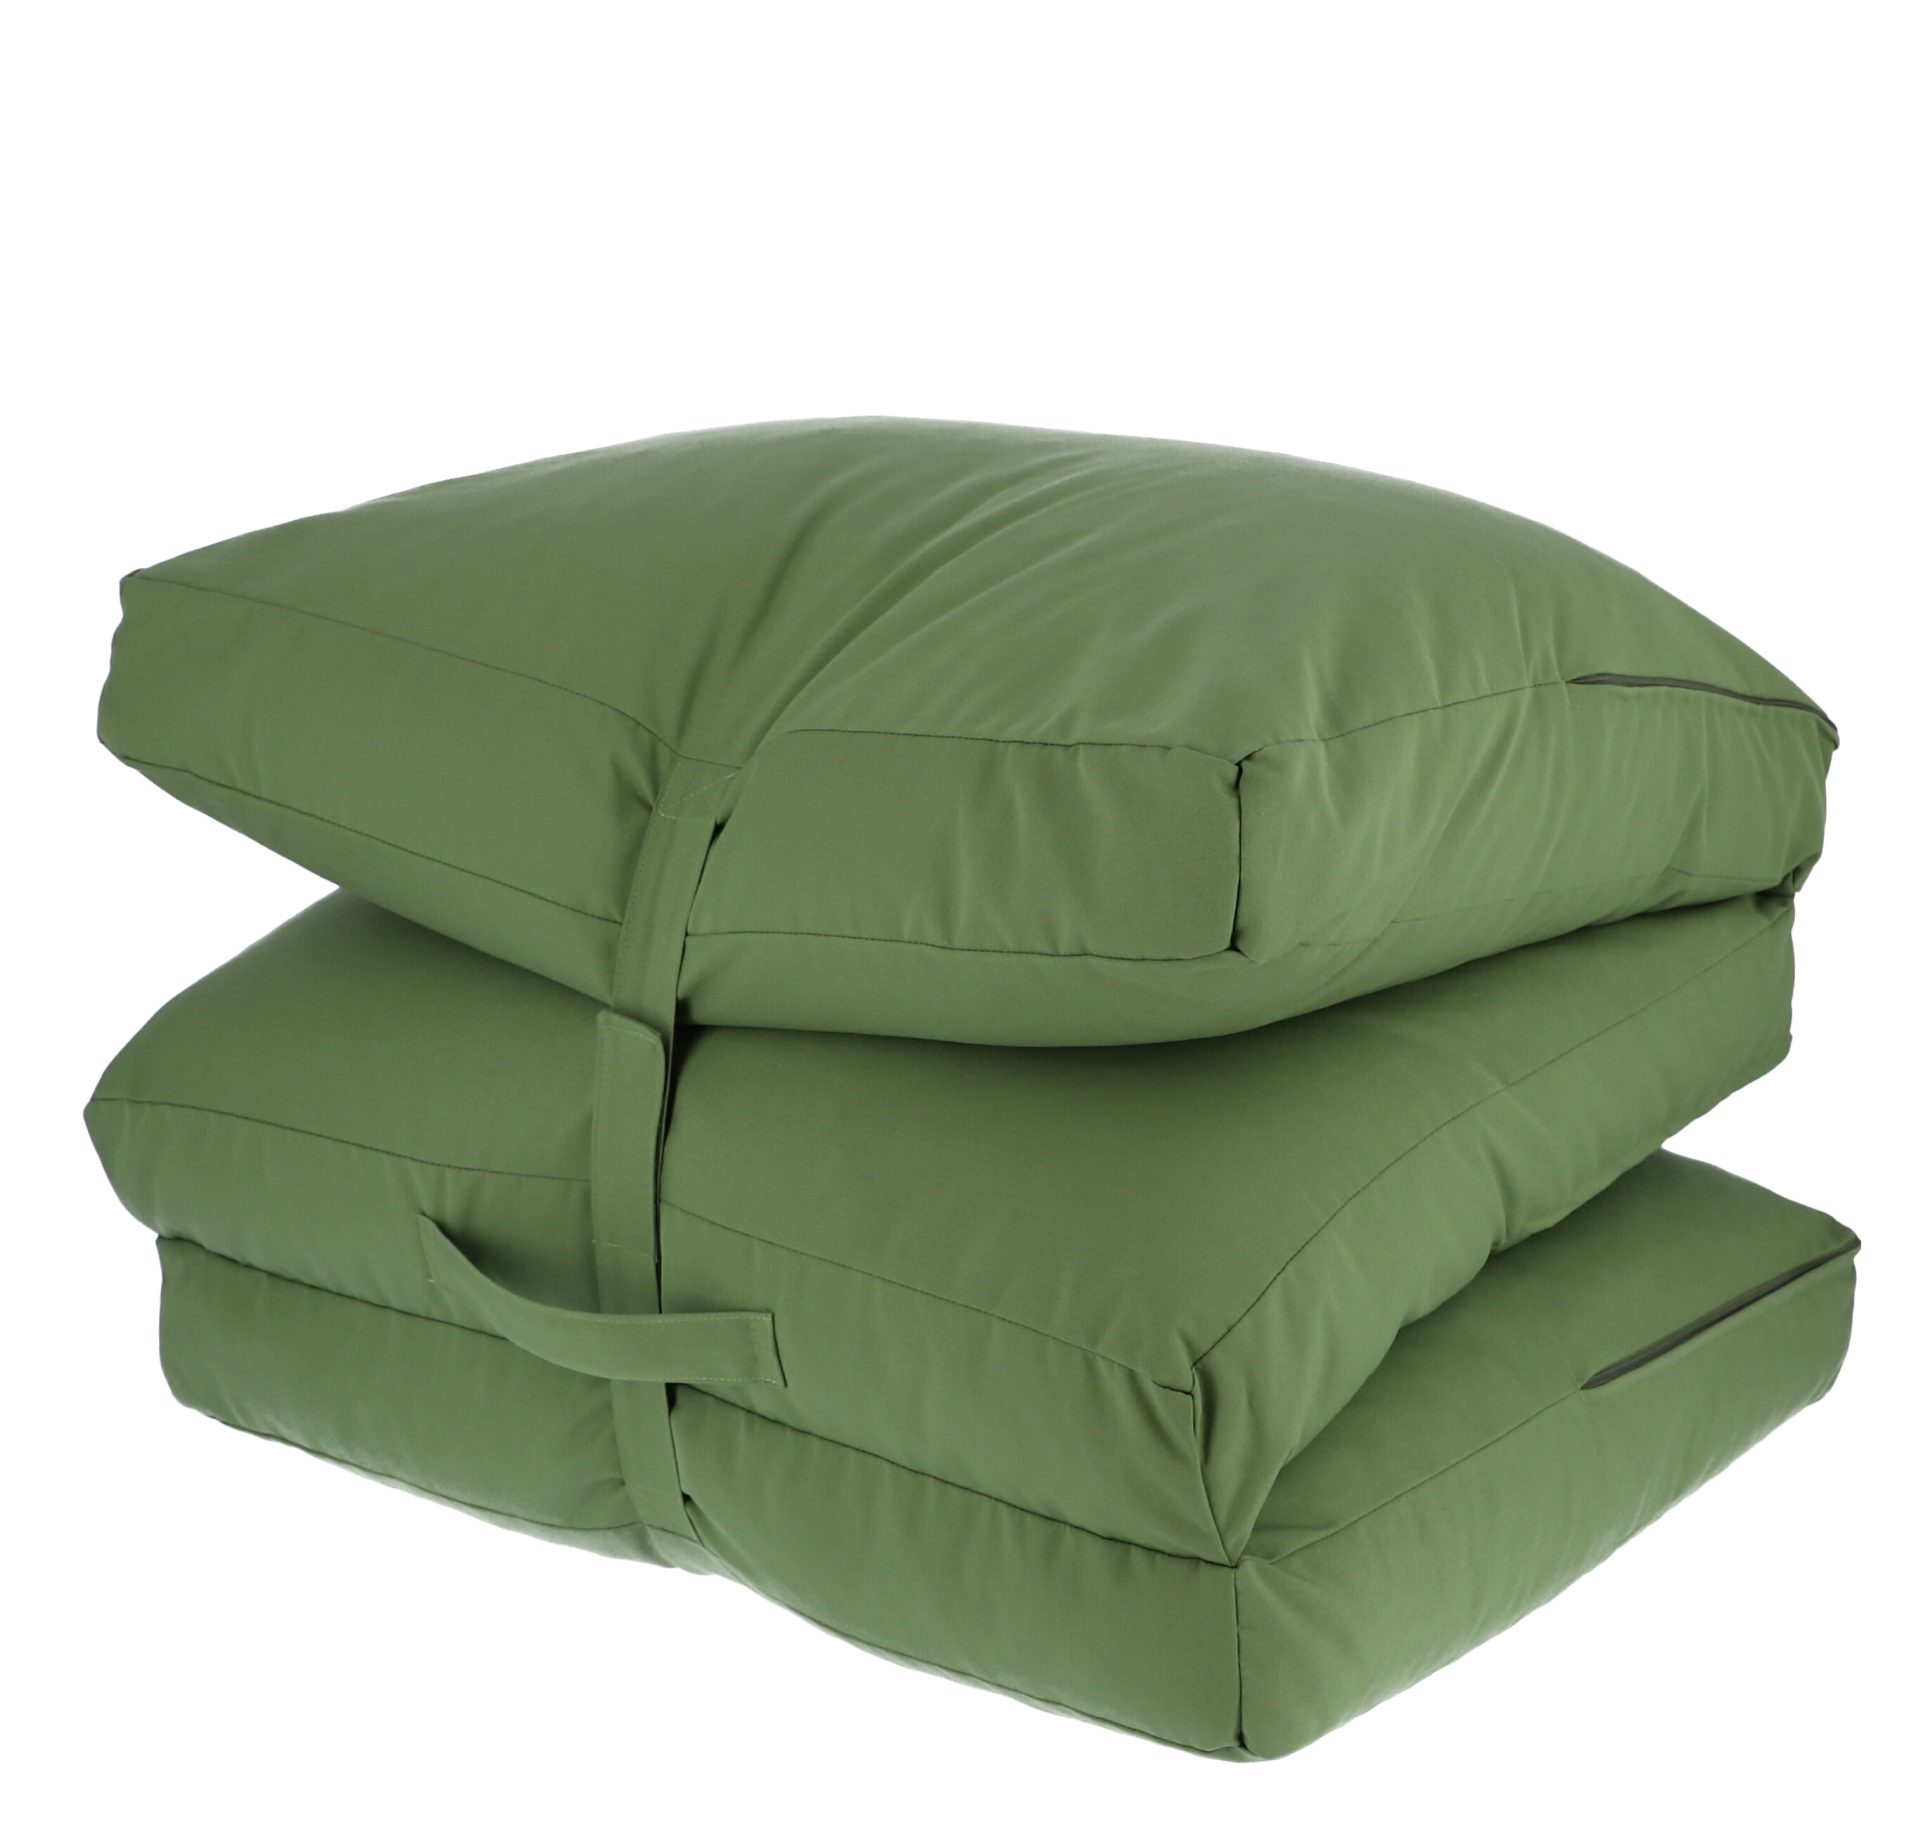 Das bequeme Bodenkissen Sheffiled besitzt einen abwaschbaren Bezug in der Farbe Grün und ist daher perfekt für den Outdoor Bereich geeignet. Designet wurde das Kissen von der Marke Jan Kurtz.